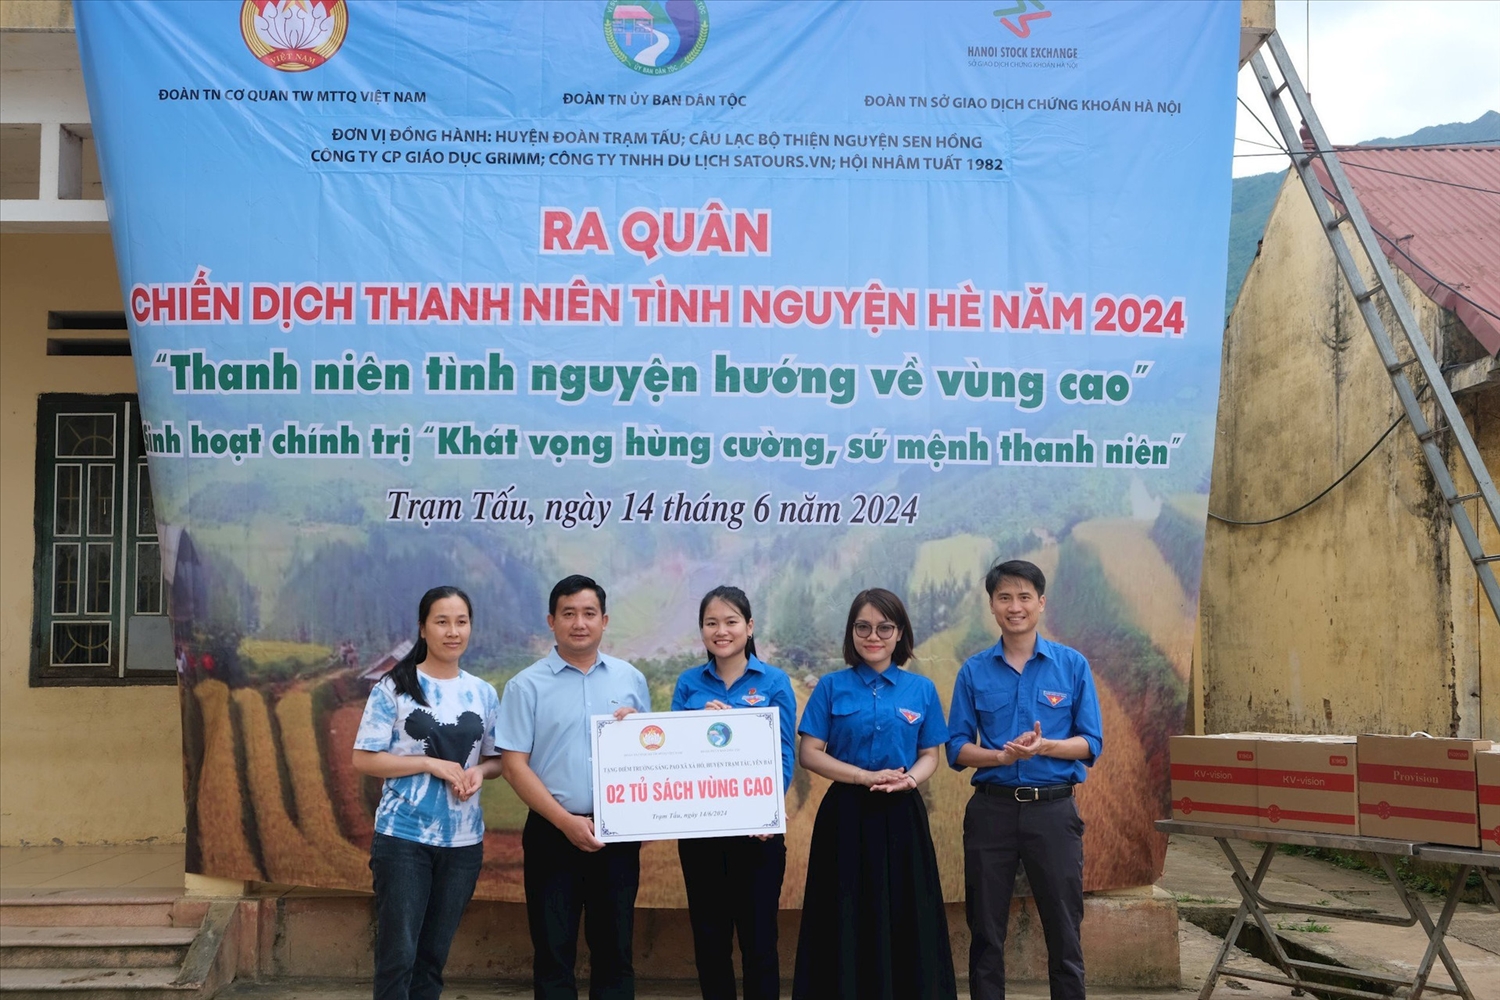 Đoàn Thanh niên các cơ quan: Trung ương MTTQ Việt Nam, Ủy ban Dân tộc, Sở Giao dịch Chứng khoán Hà Nội trao tặng 2 tủ sách vùng cao cho điểm truờng Sáng Pao.